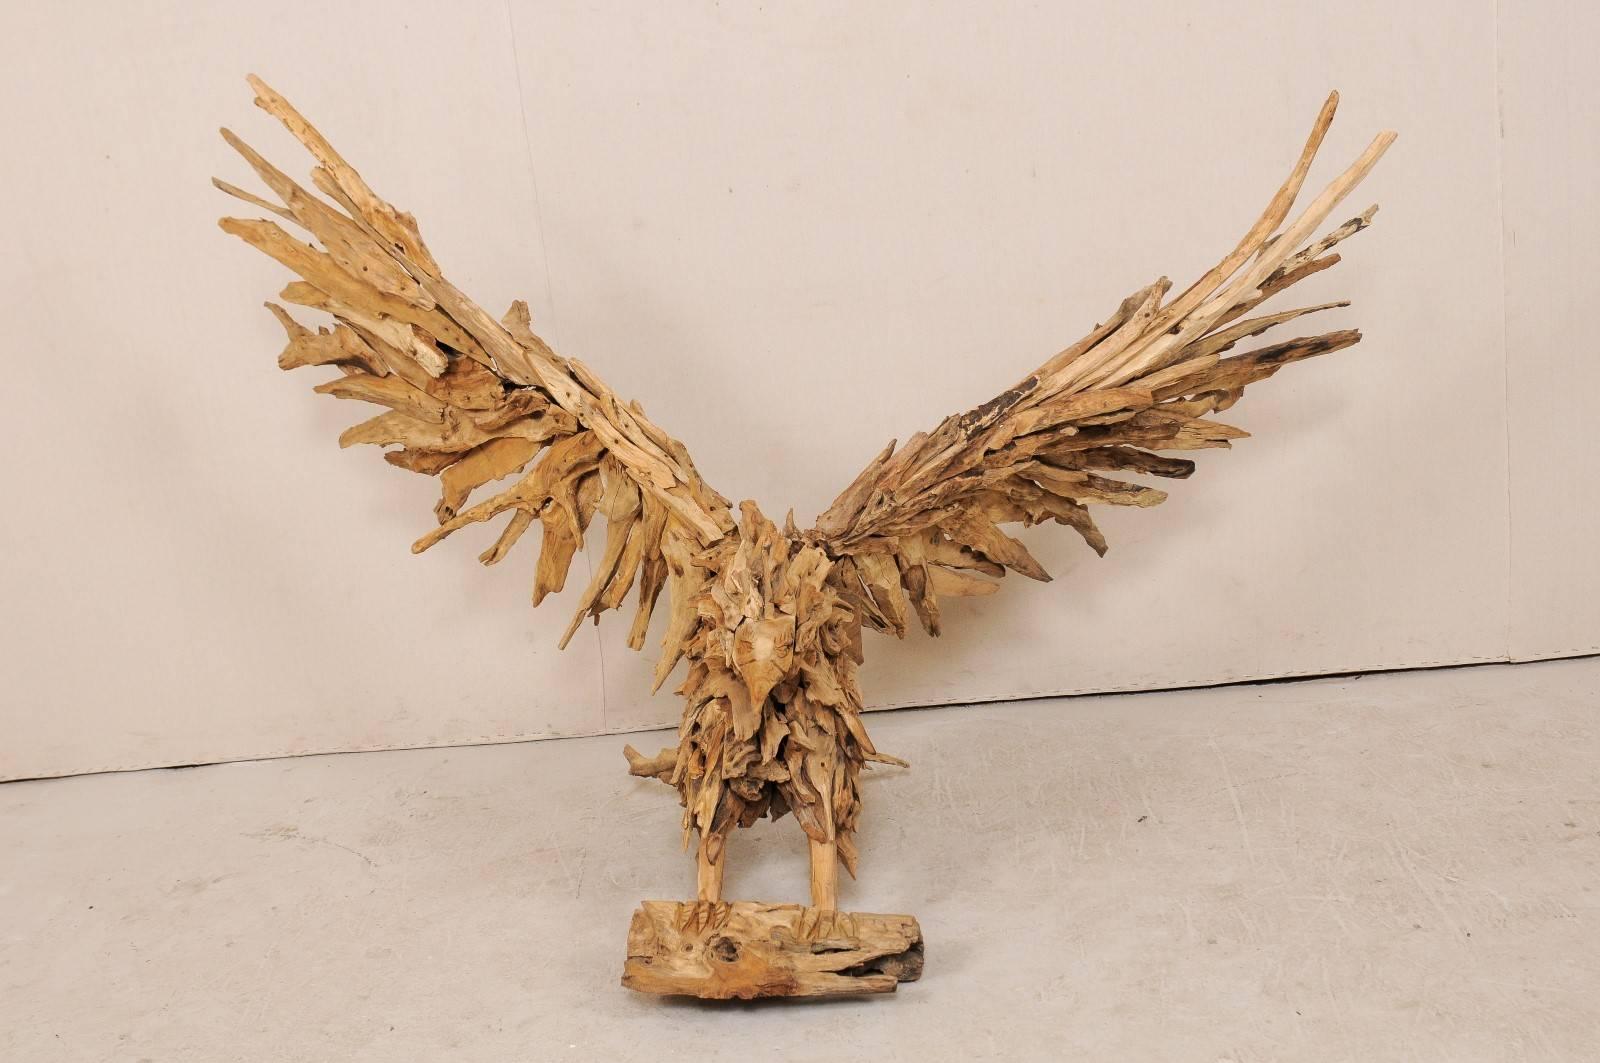 Sculpture d'aigle de grande taille en bois flotté. Cet aigle majestueux est représenté avec une large envergure vers le haut, comme s'il venait d'atterrir ou se préparait à voler. Les serres sont agrippées à un gros morceau de bois, la bouche